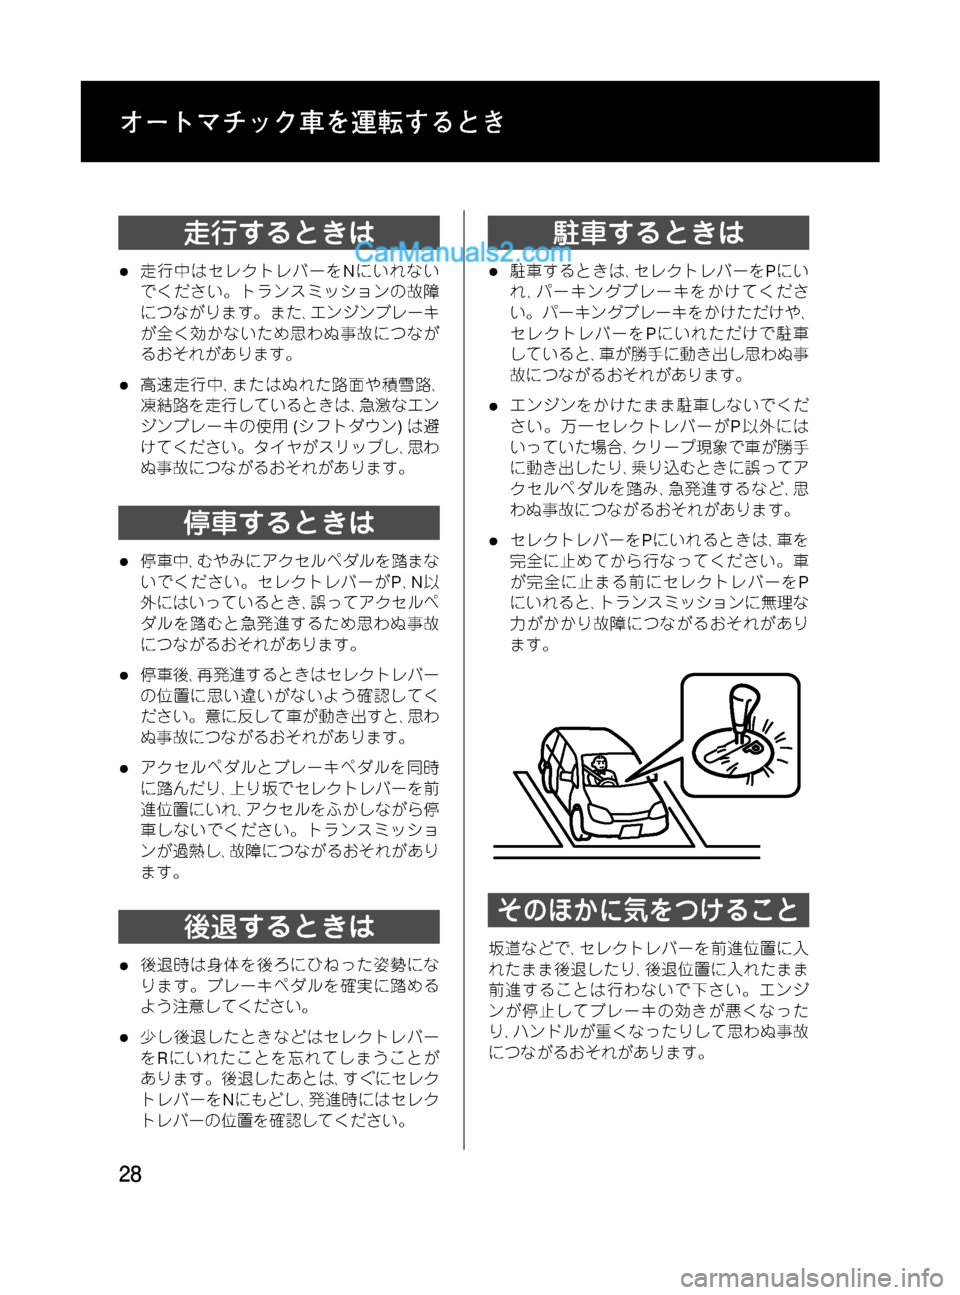 MAZDA MODEL VERISA 2007  ベリーサ｜取扱説明書 (in Japanese) Black plate (28,1)
走行するときは
l走行中はセレクトレバーをNにいれない
でください。トランスミッションの故障
につながります。また､エンジンブ�